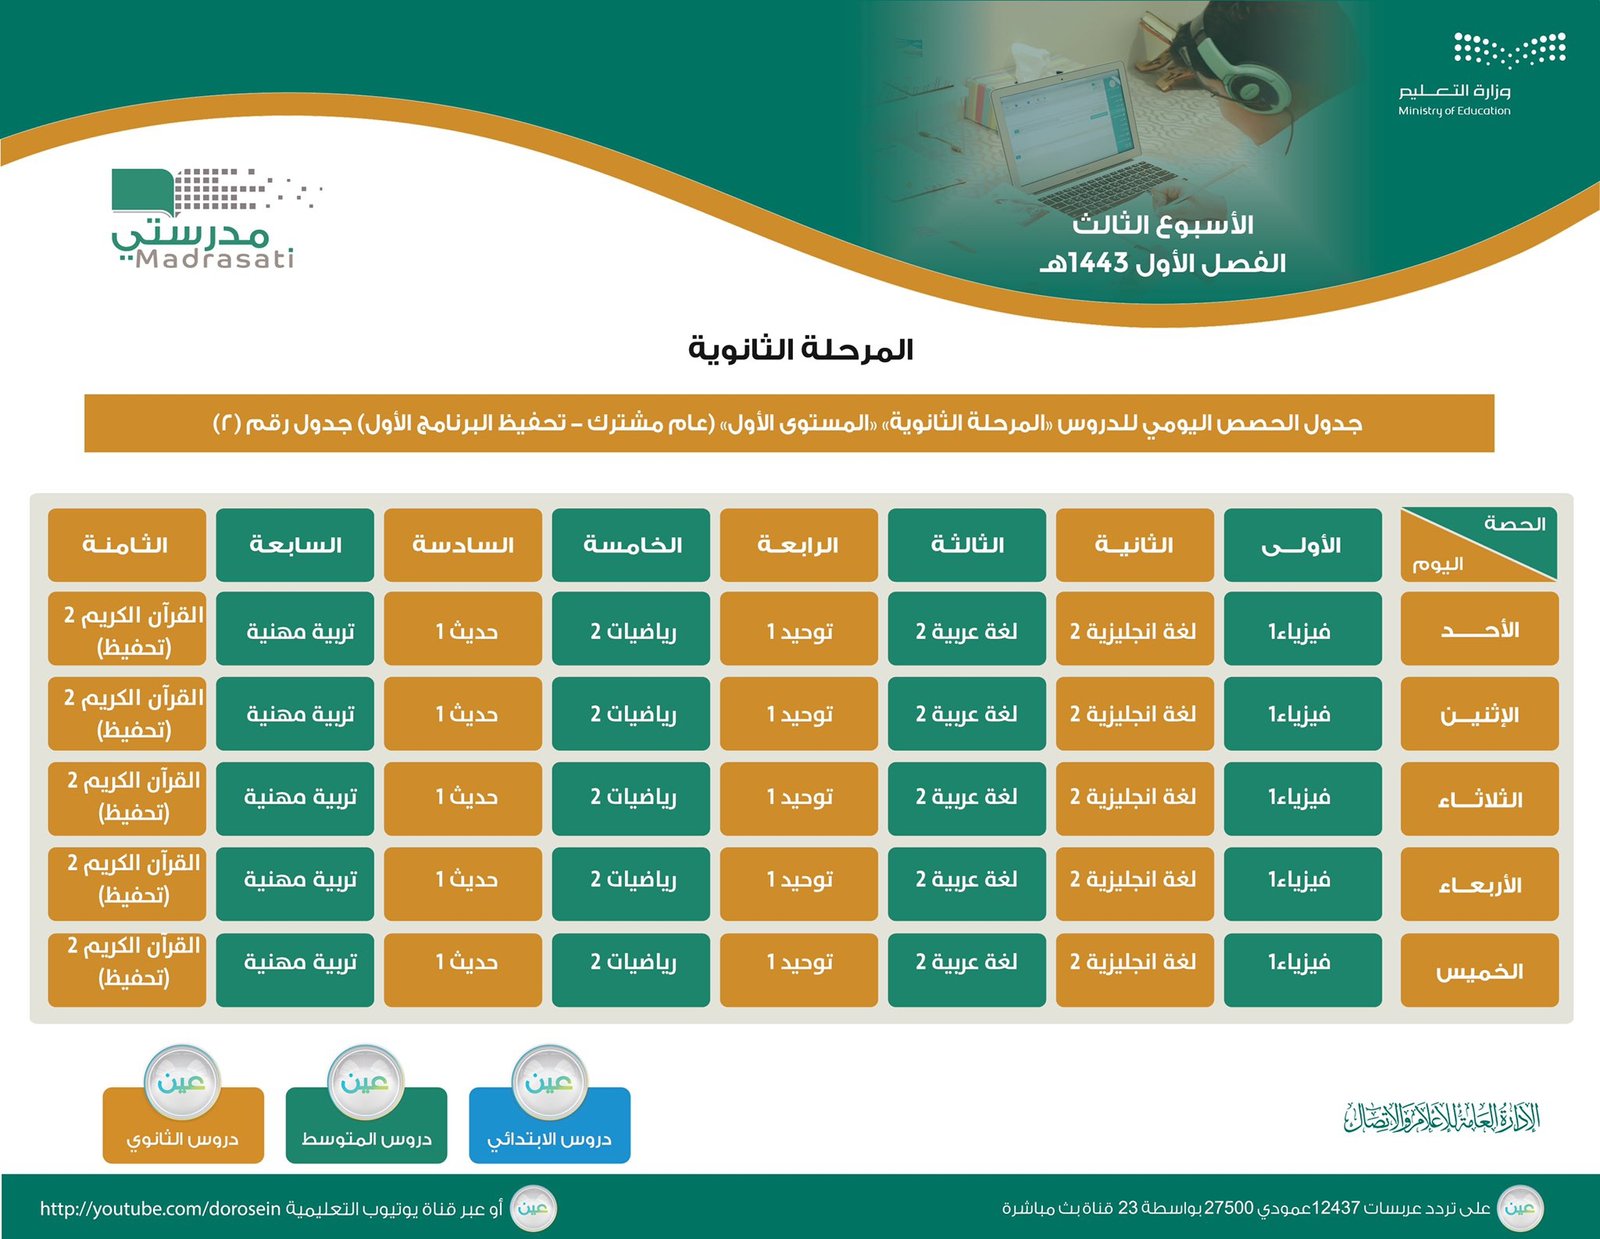 الحصص الدراسية للمتوسط والثانوي للأسبوع الثالث في السعودية . 1